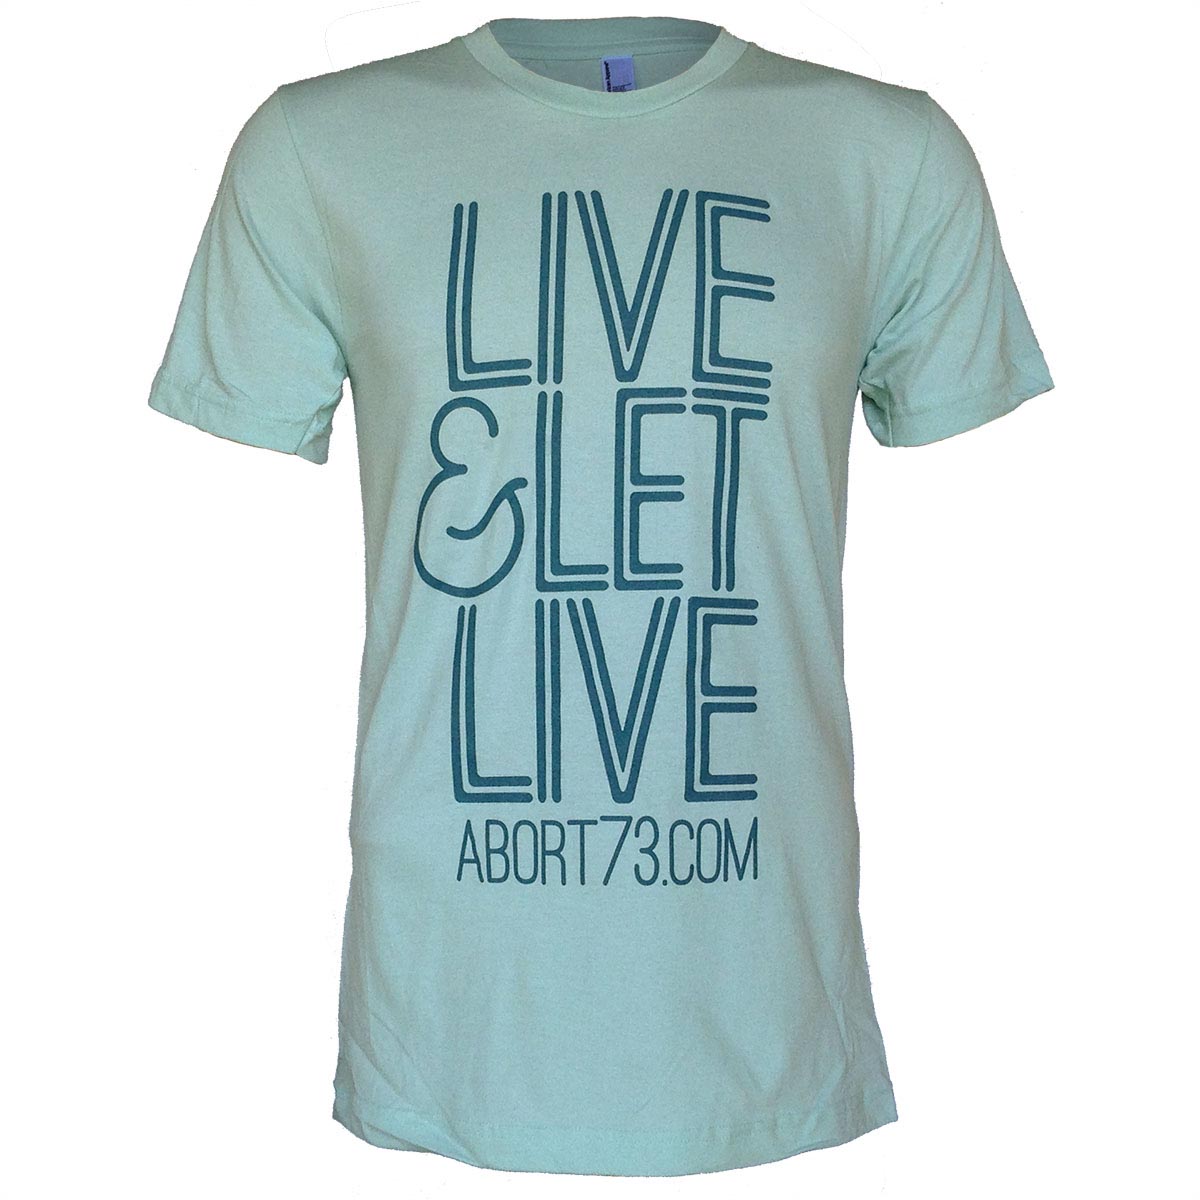 Live & Let Live (Abort73 Unisex T-shirt)